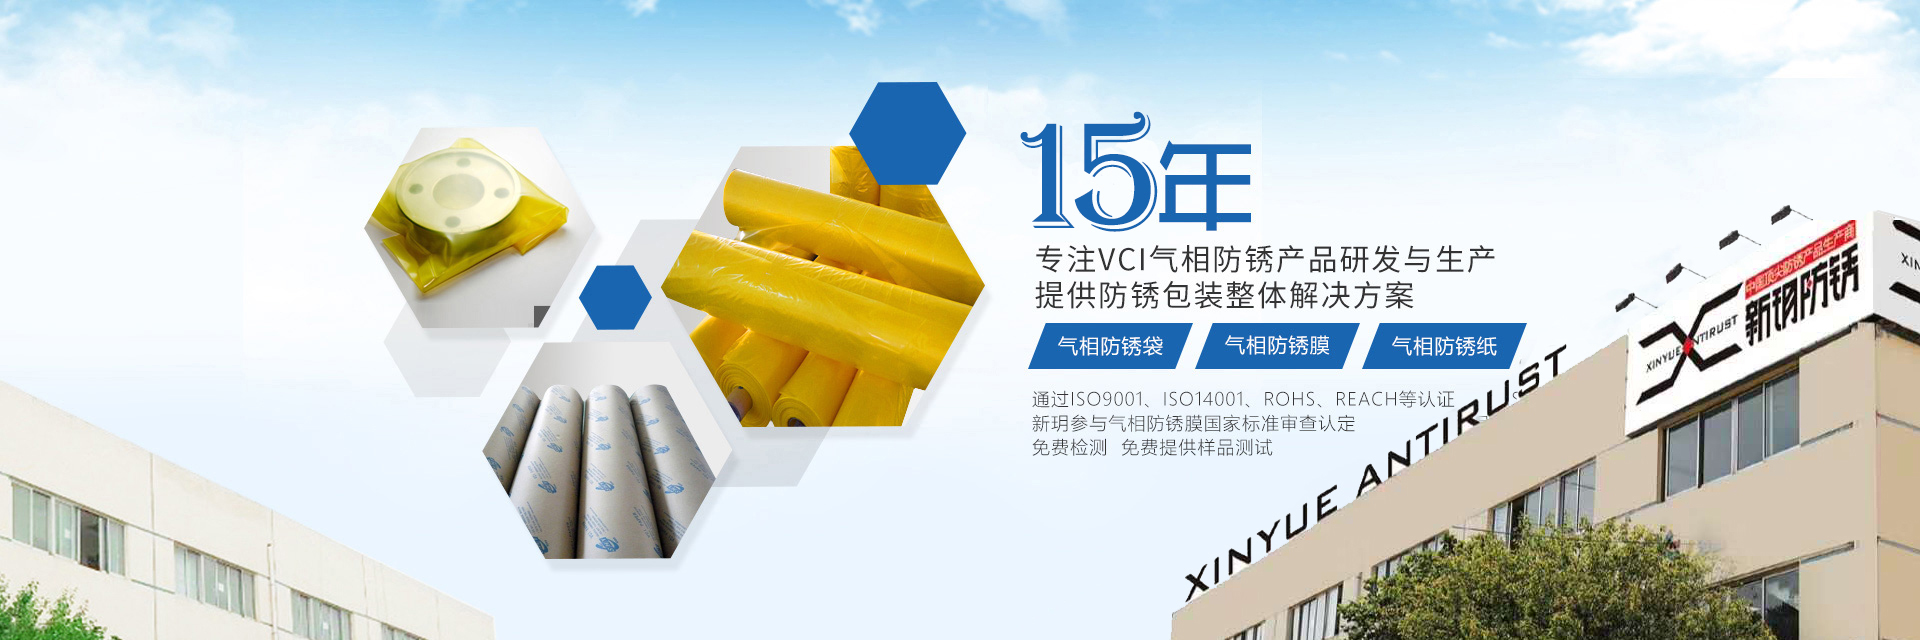 新玥防锈-15年专注VCI气相防锈产品研发及生产